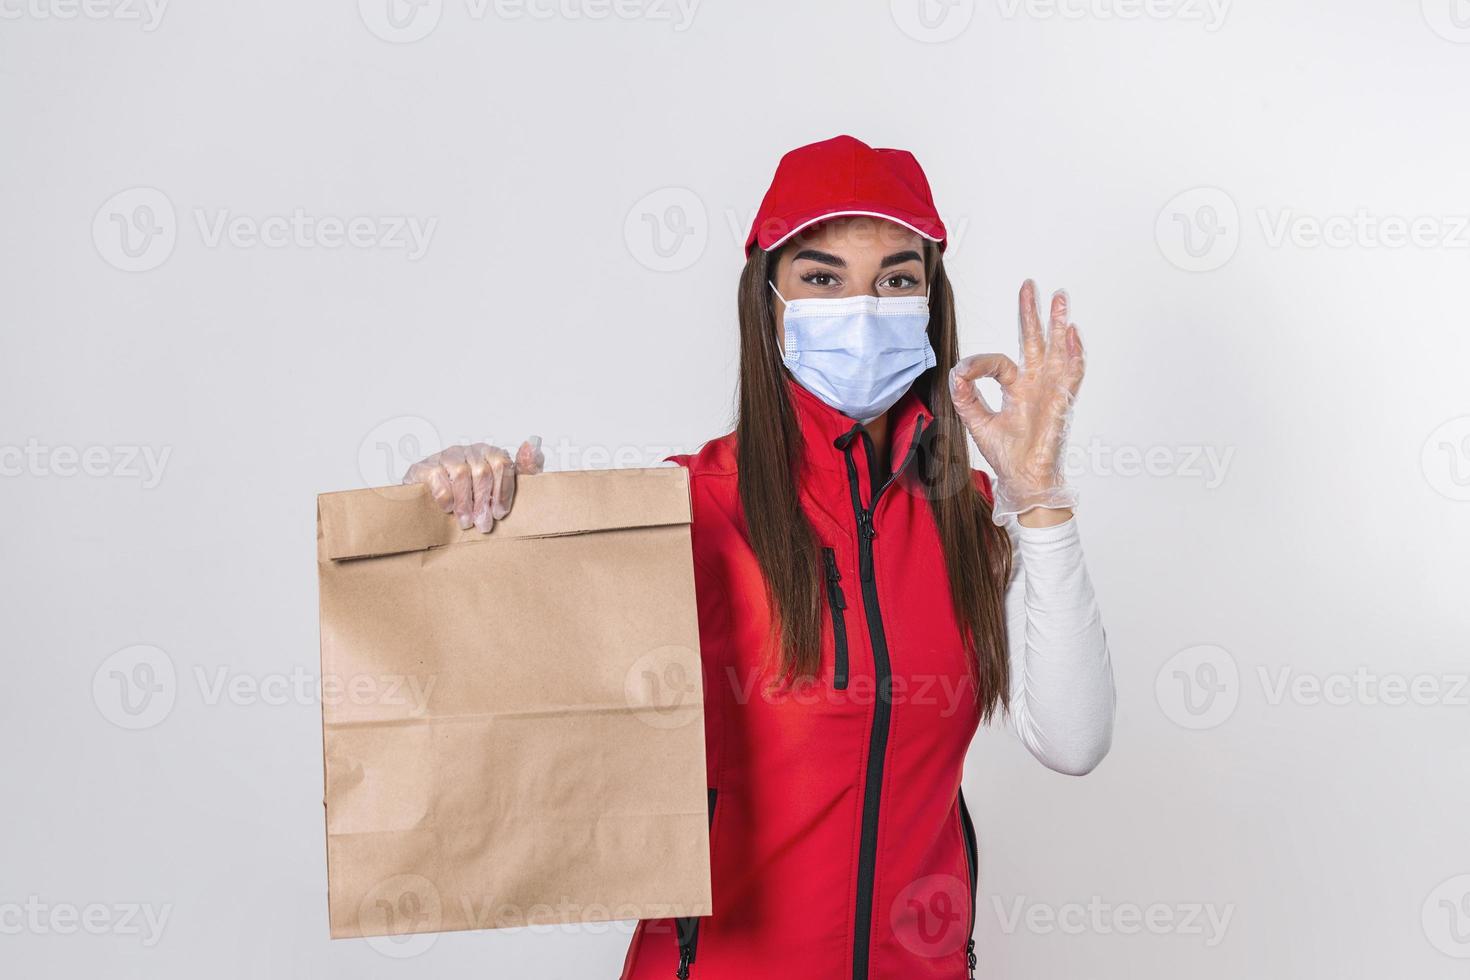 lieferfrau in roter uniform hält kraftpapierpaket mit lebensmitteln isoliert auf weißem hintergrund, trägt medizinische maske und handschuhe. weibliche angestellte ich arbeite als kurier. Service-Konzept. foto